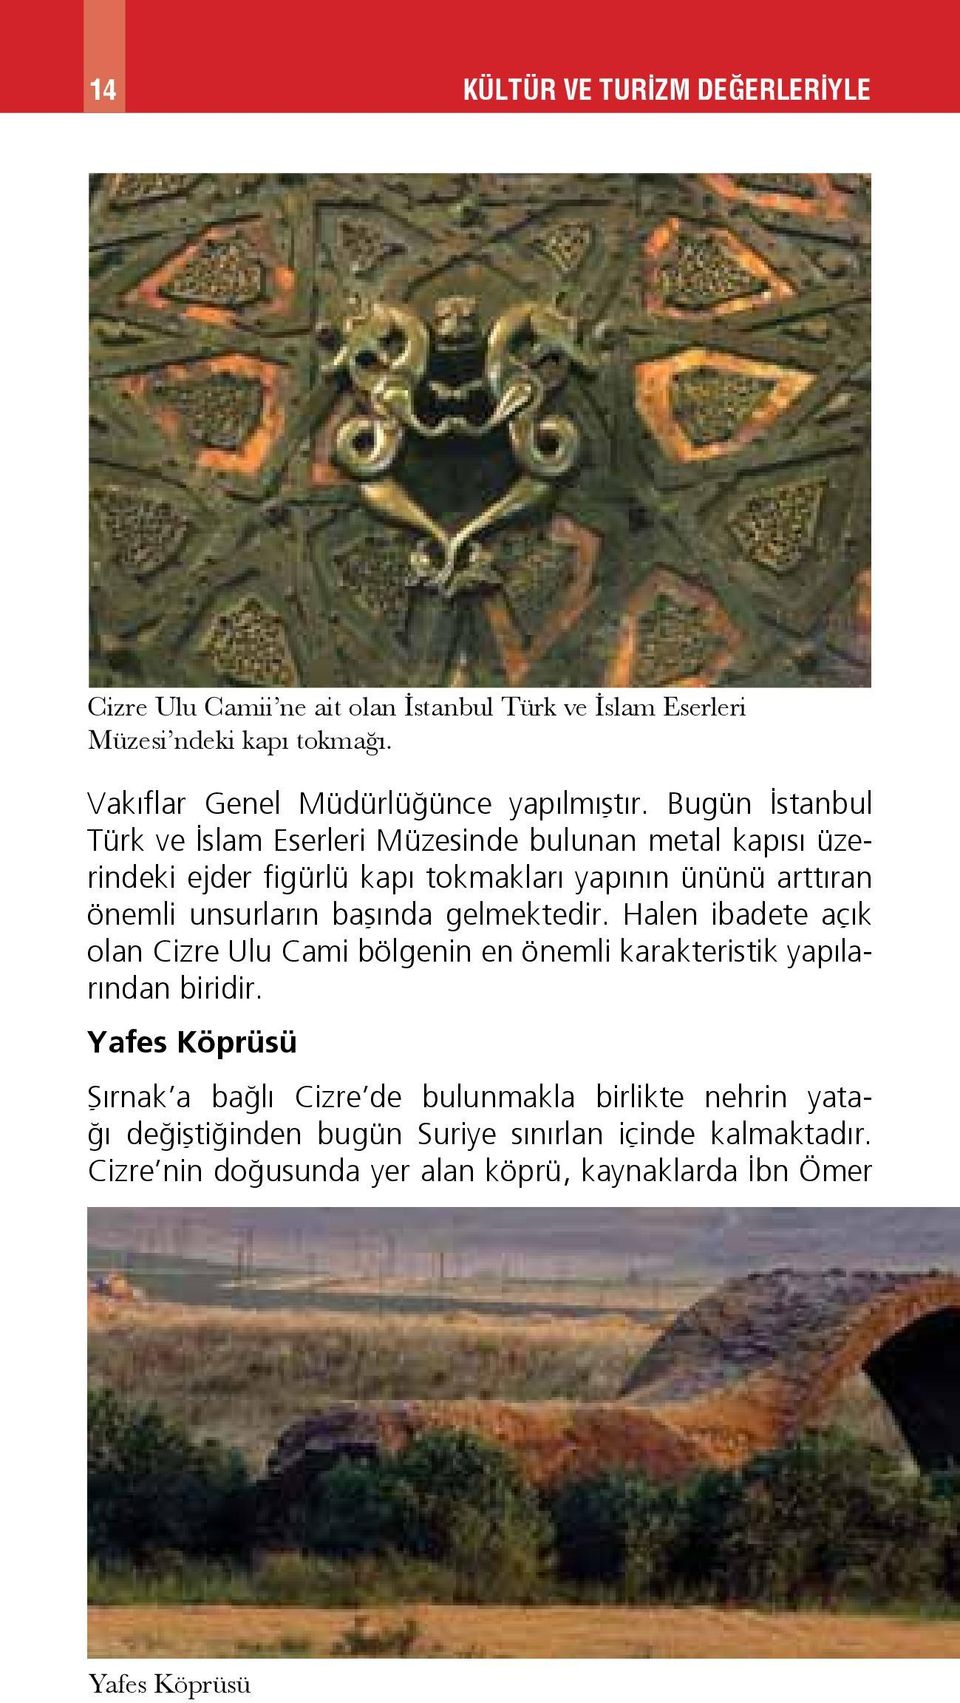 Bugün İstanbul Türk ve İslam Eserleri Müzesinde bulunan metal kapısı üzerindeki ejder figürlü kapı tokmakları yapının ününü arttıran önemli unsurların